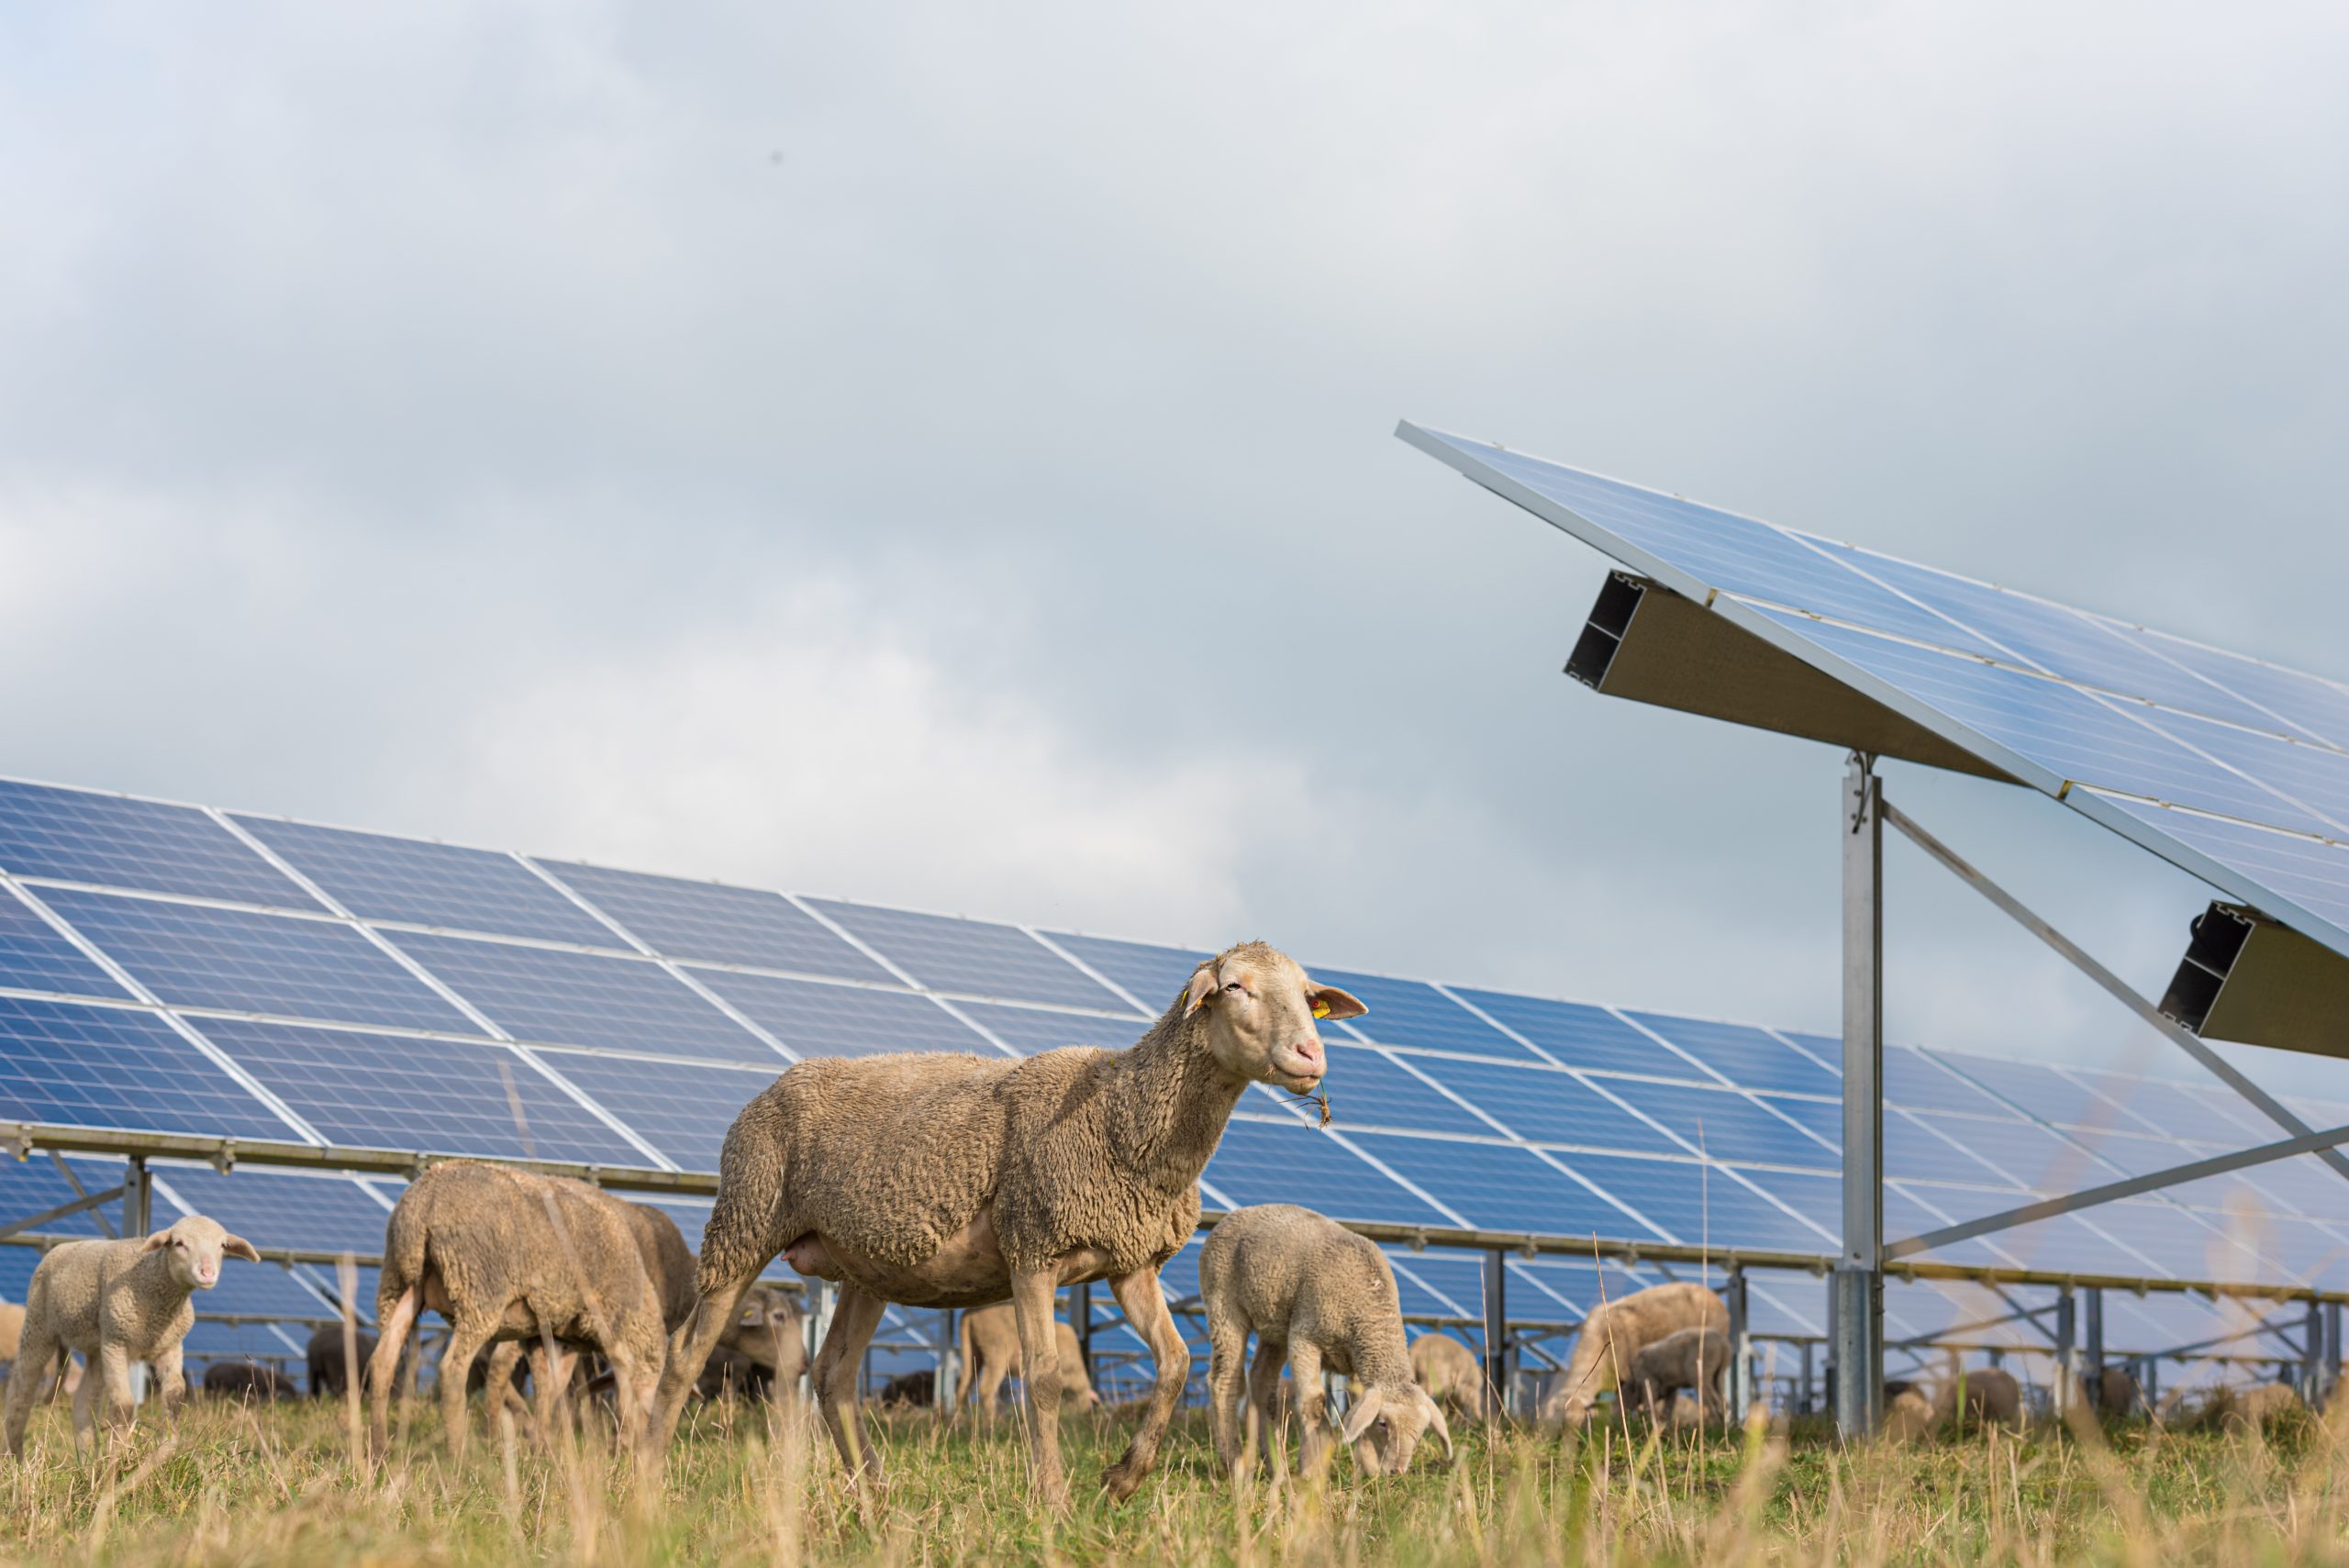 Sheep Grazing around Solar Panels